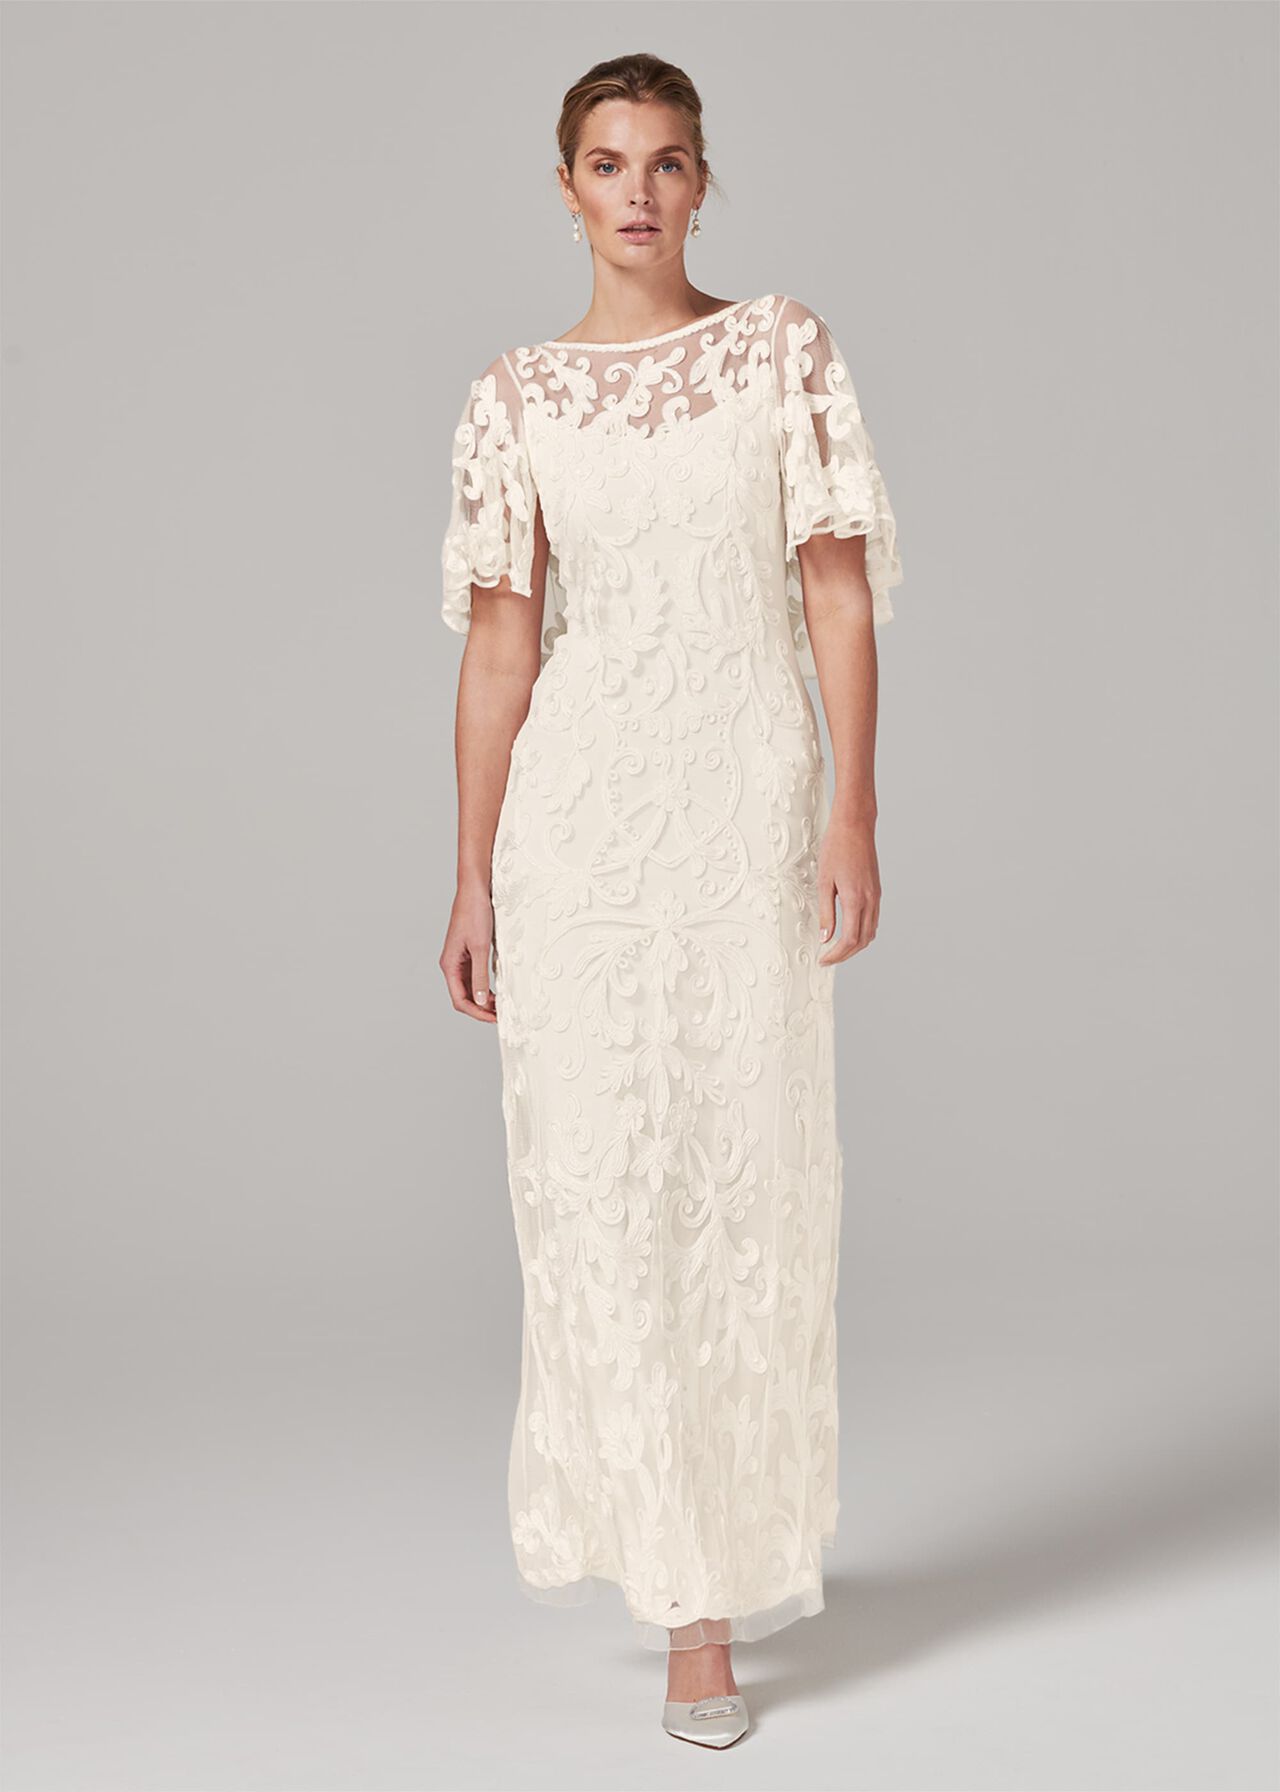 Avianna Tapework Lace Wedding Dress | Phase Eight